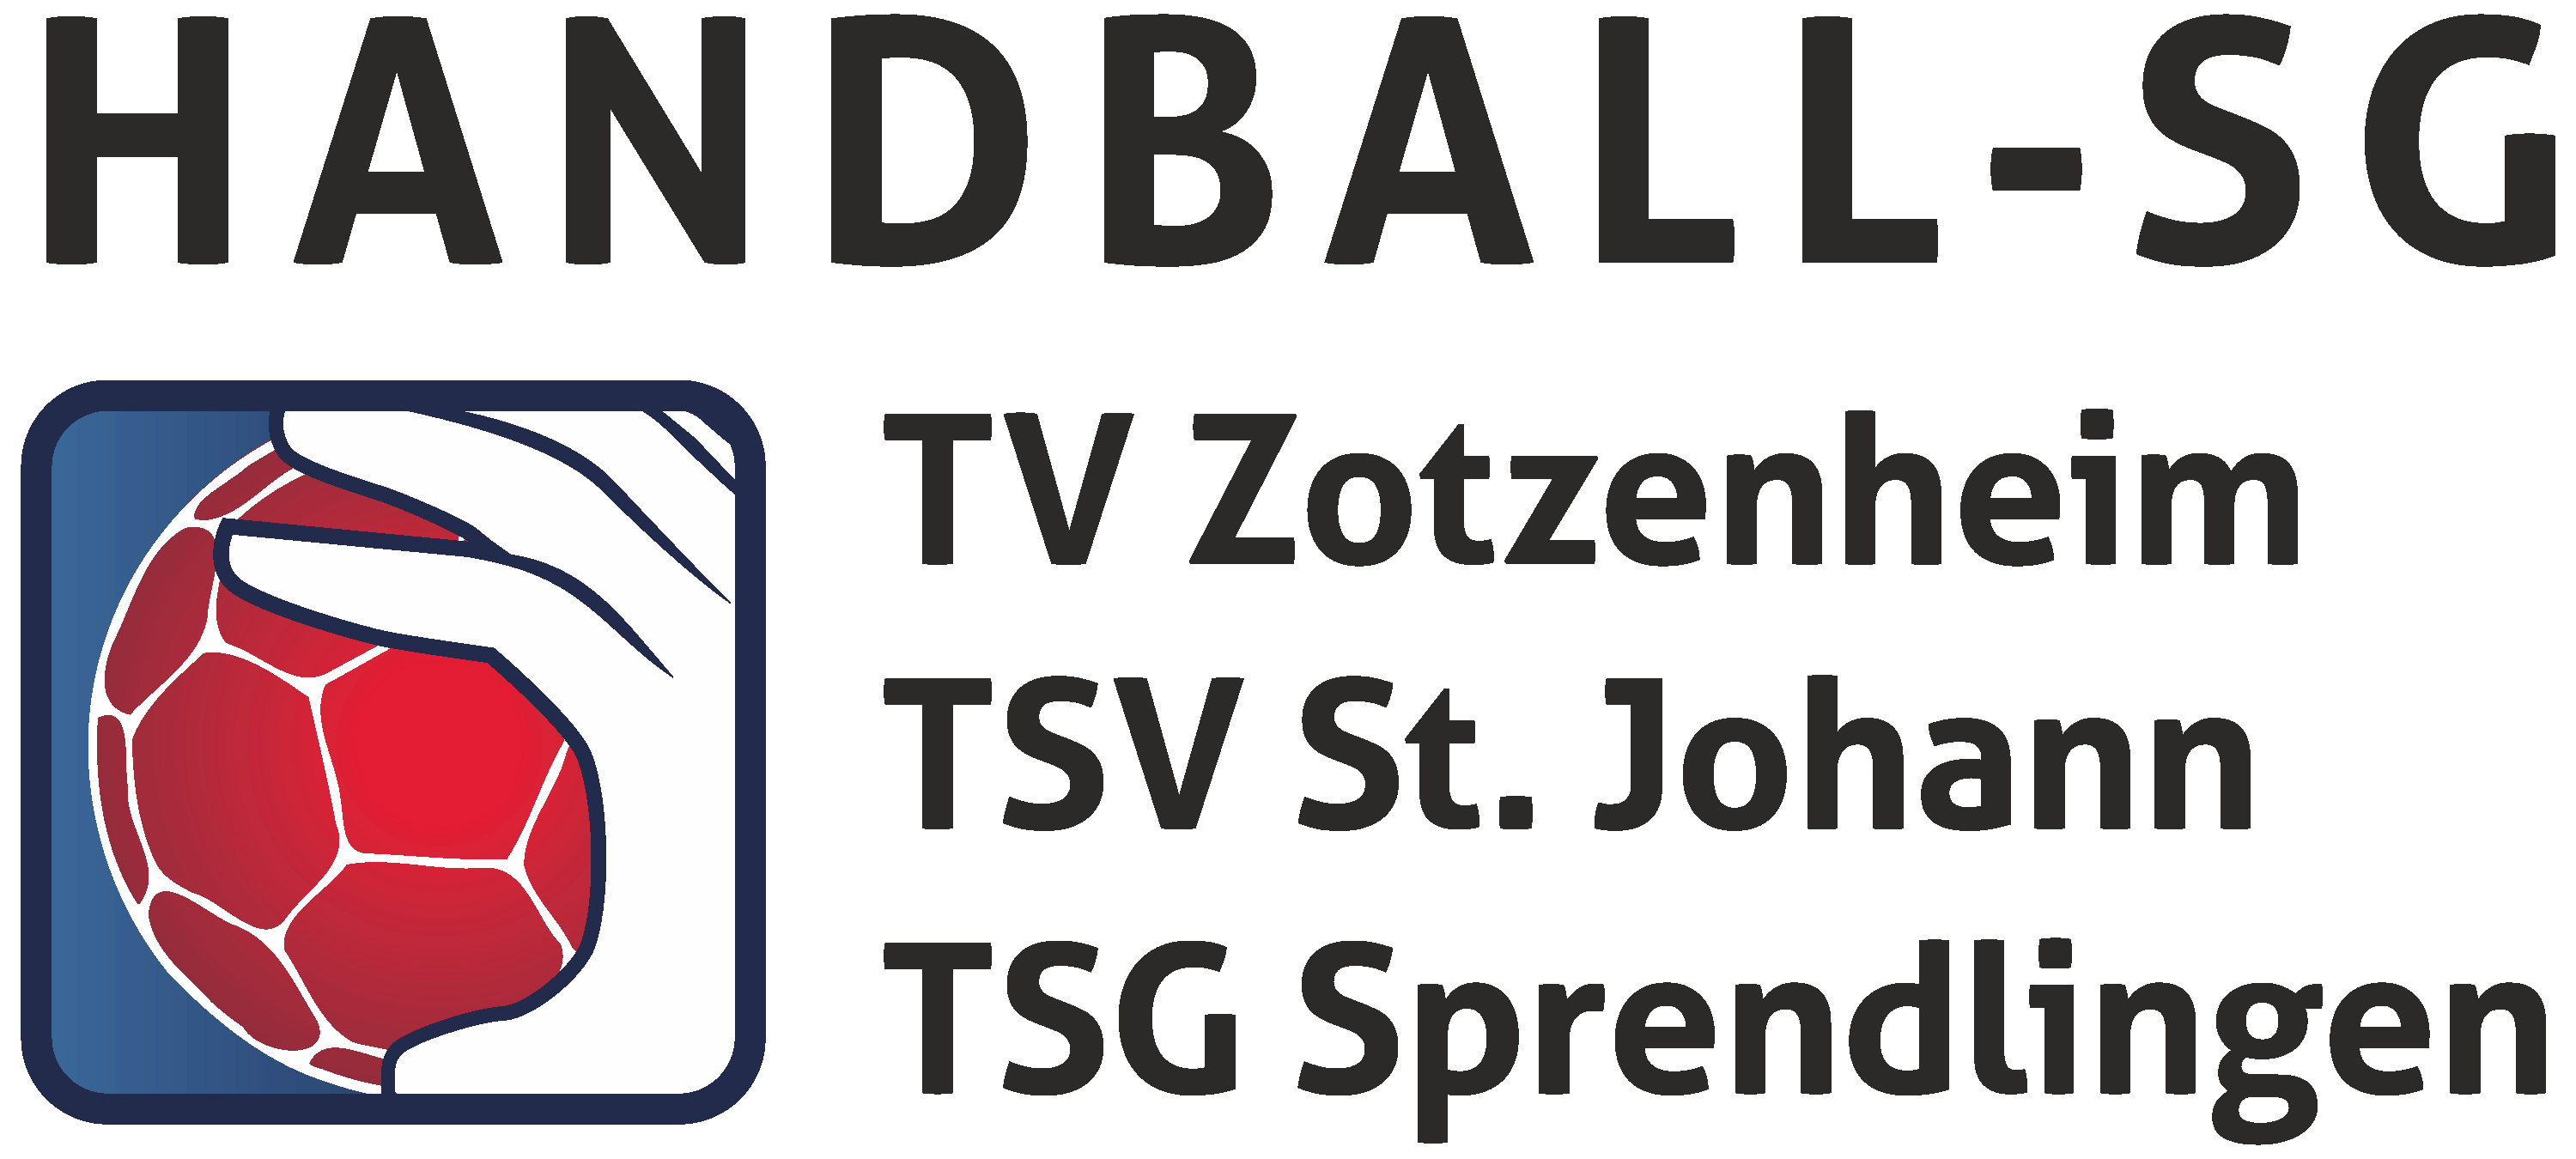 Handball-SG